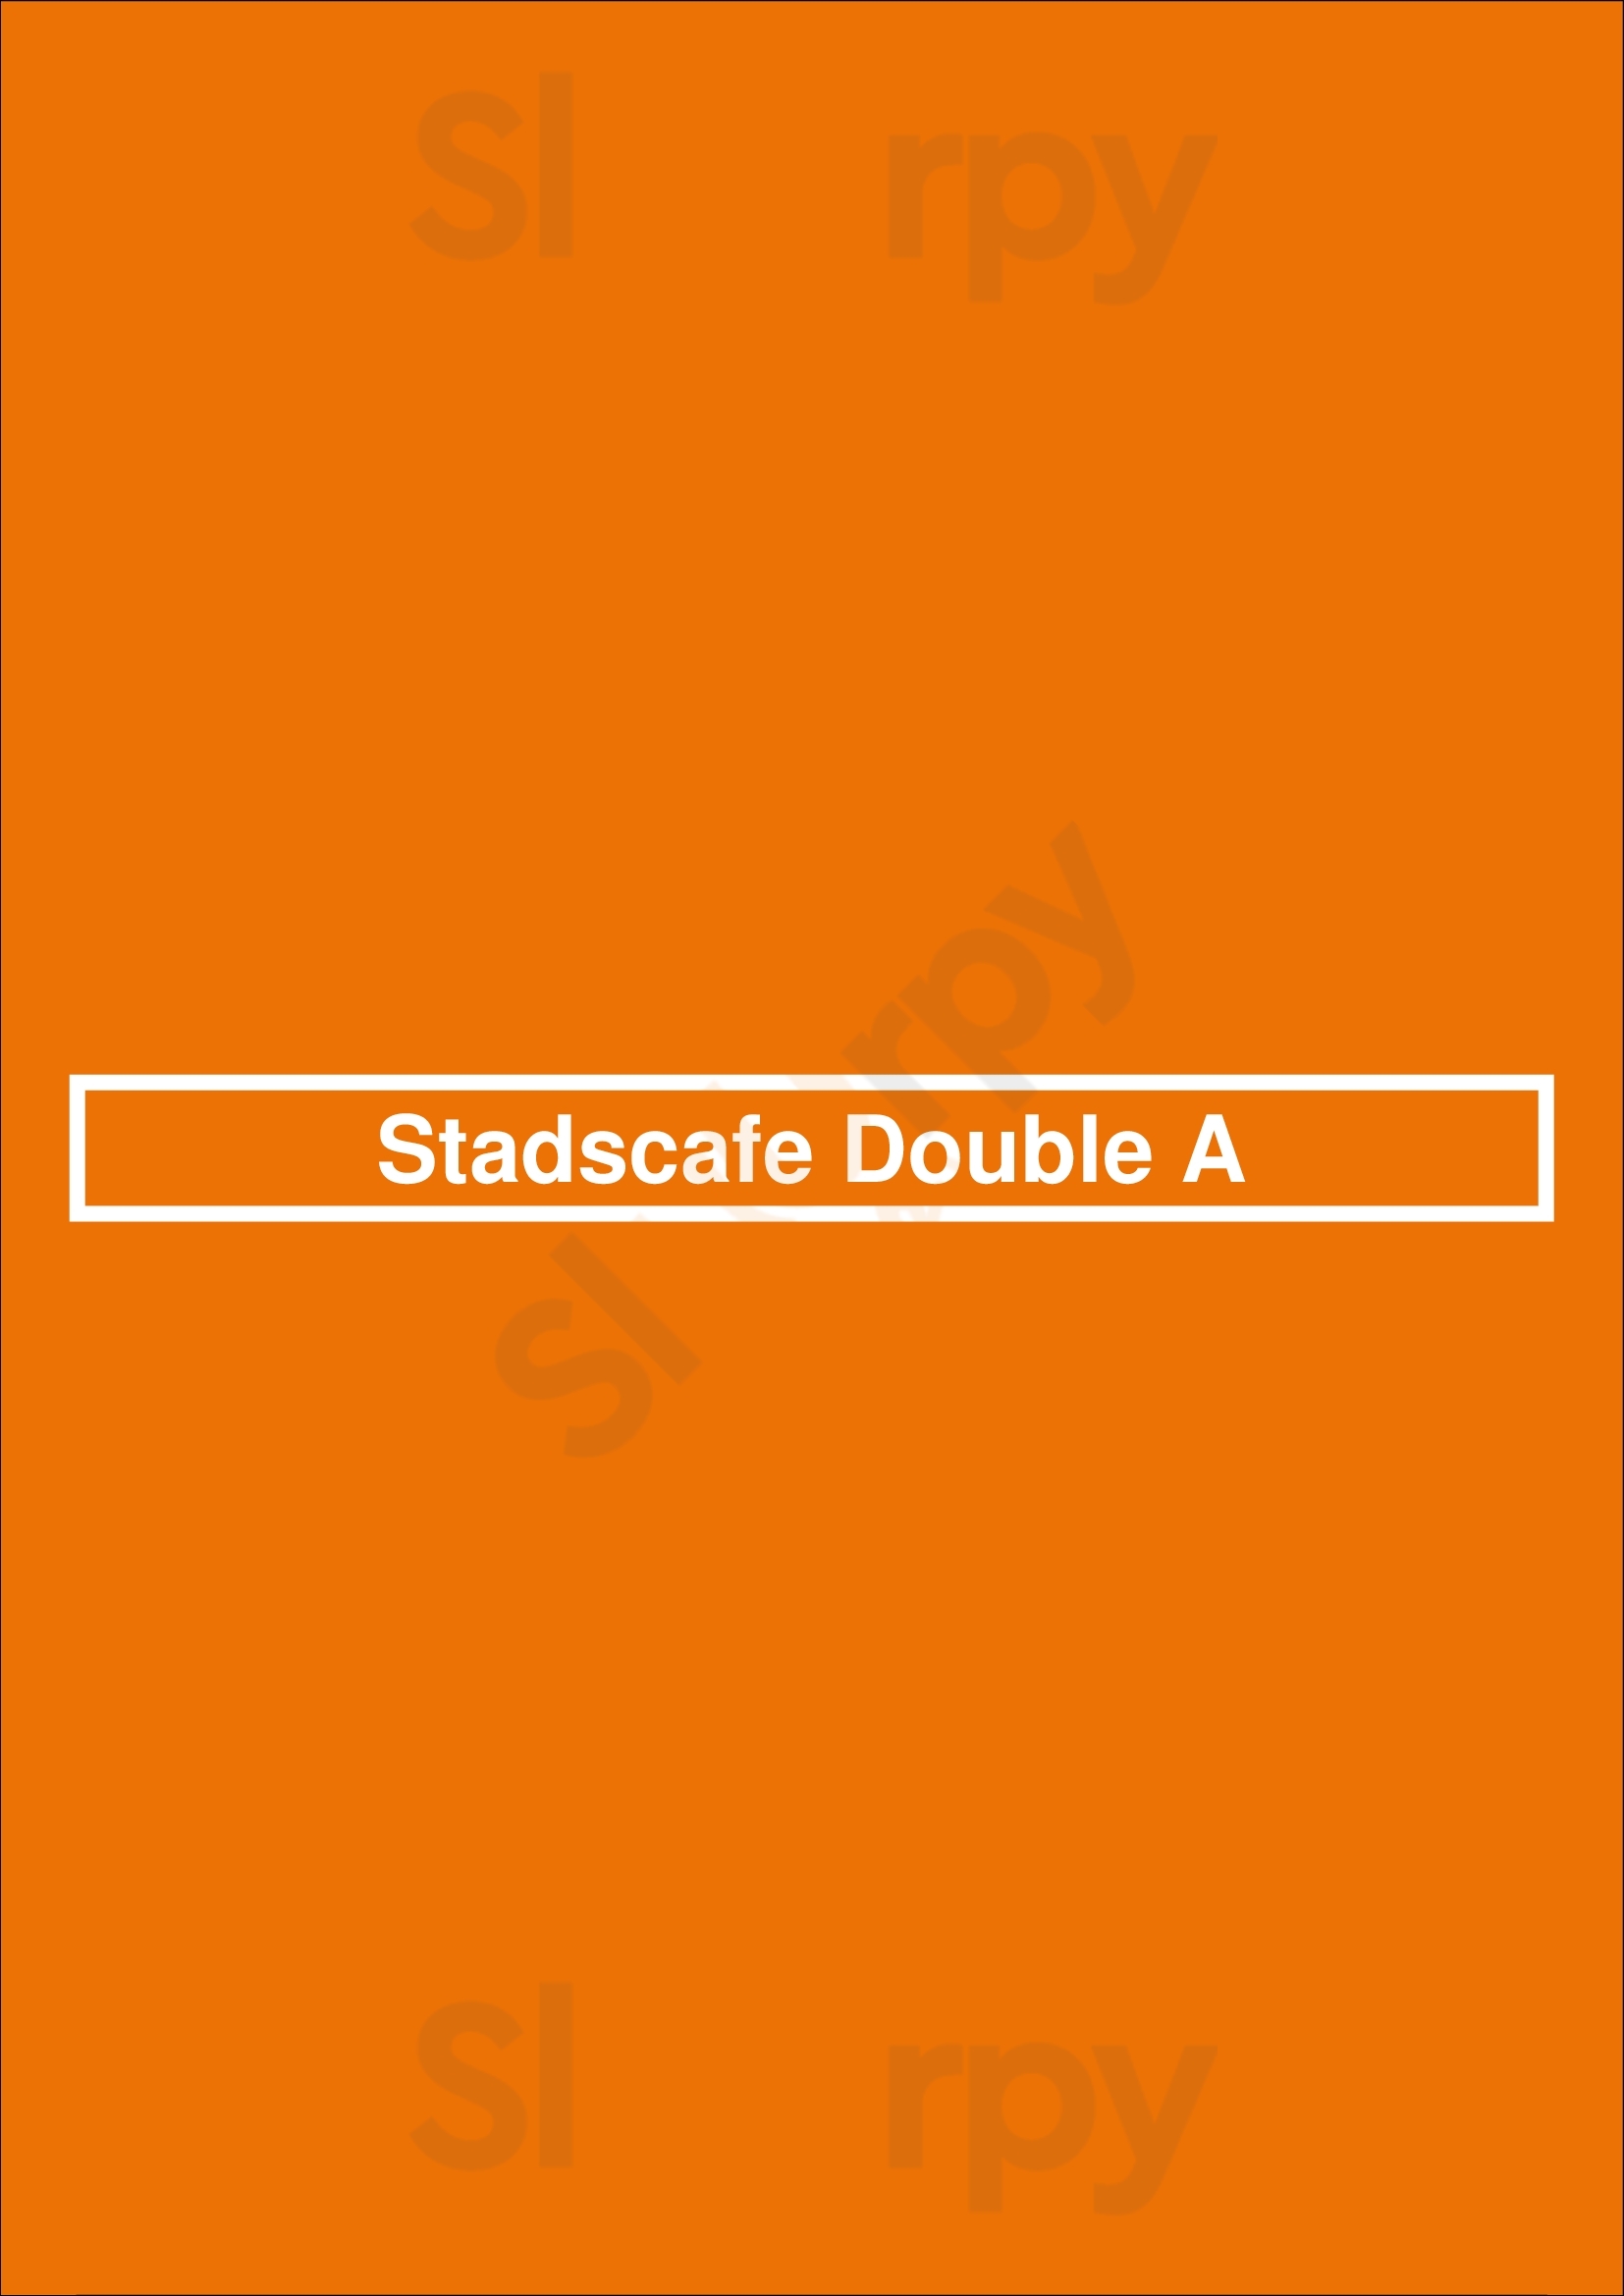 Stadscafe Double A Groningen Menu - 1